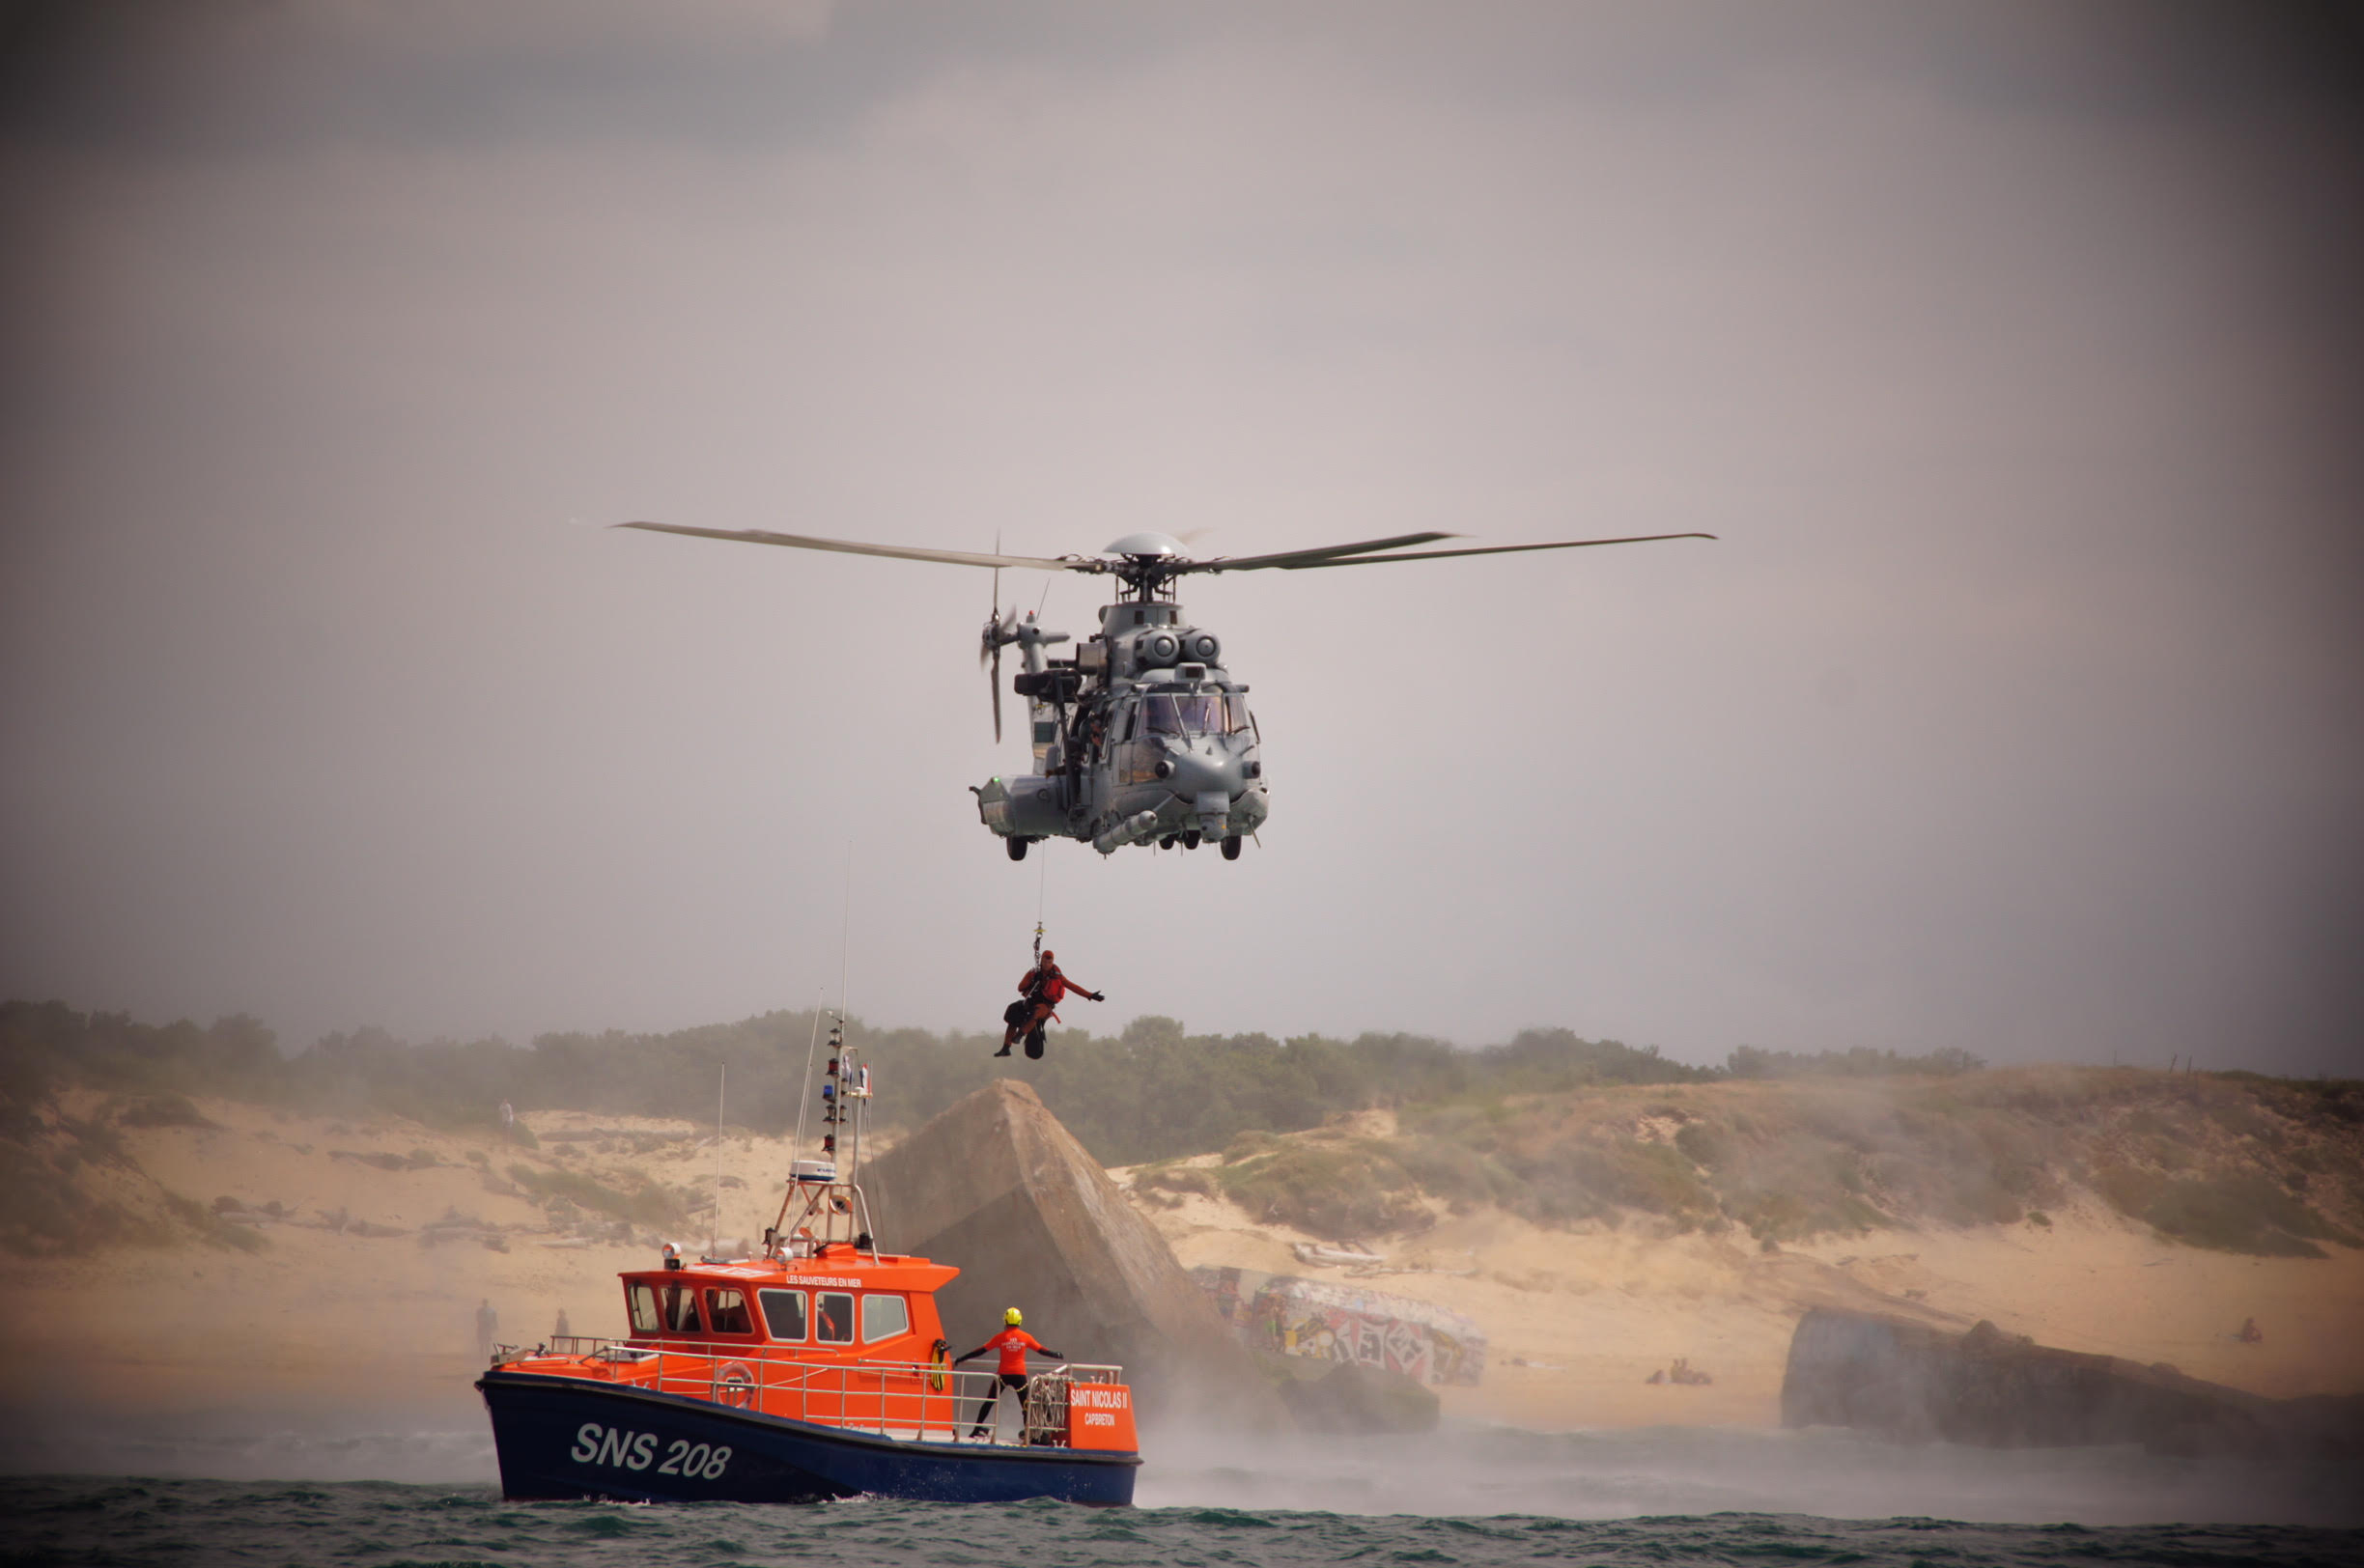 Entraînement à la récupération d’un blessé sur bateau, par un équipage Caracal de l’EH du Pyrénées, sur la vedette de la SNSM -- Photo © Armée de l'Air. -